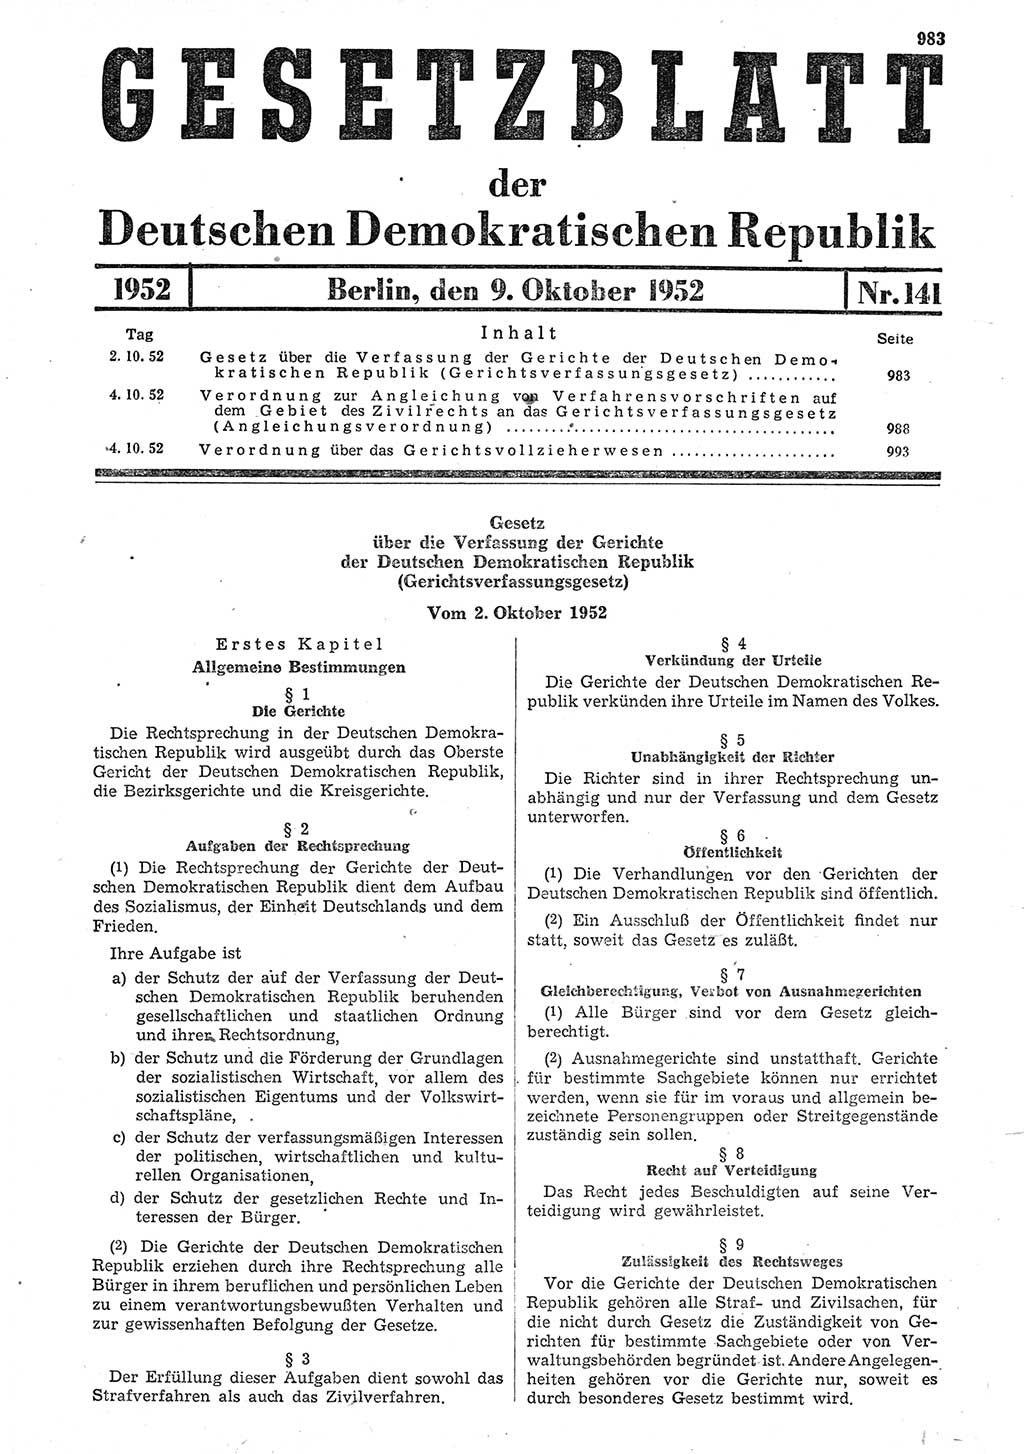 Gesetzblatt (GBl.) der Deutschen Demokratischen Republik (DDR) 1952, Seite 983 (GBl. DDR 1952, S. 983)